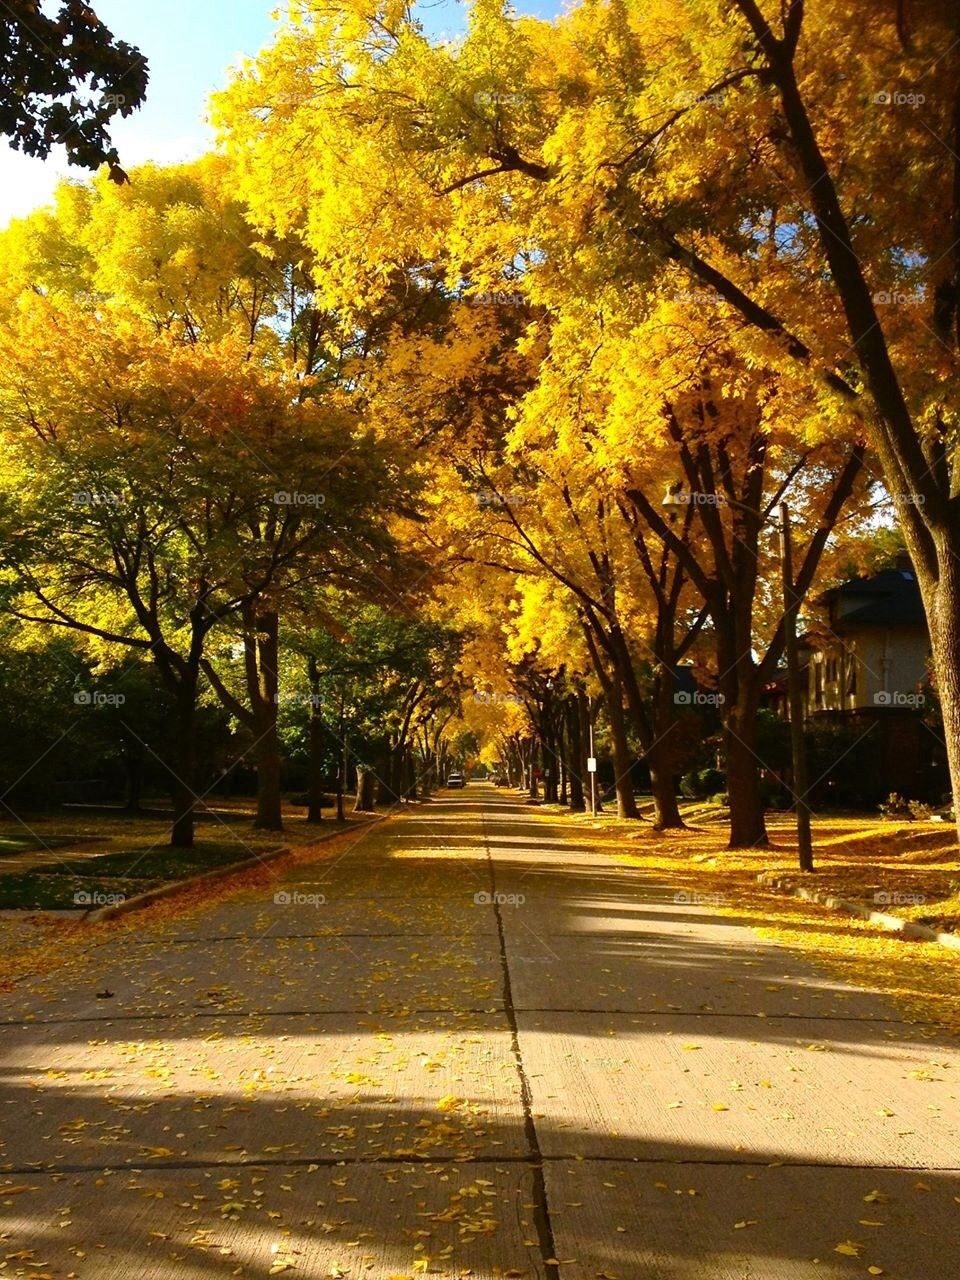 Fall street